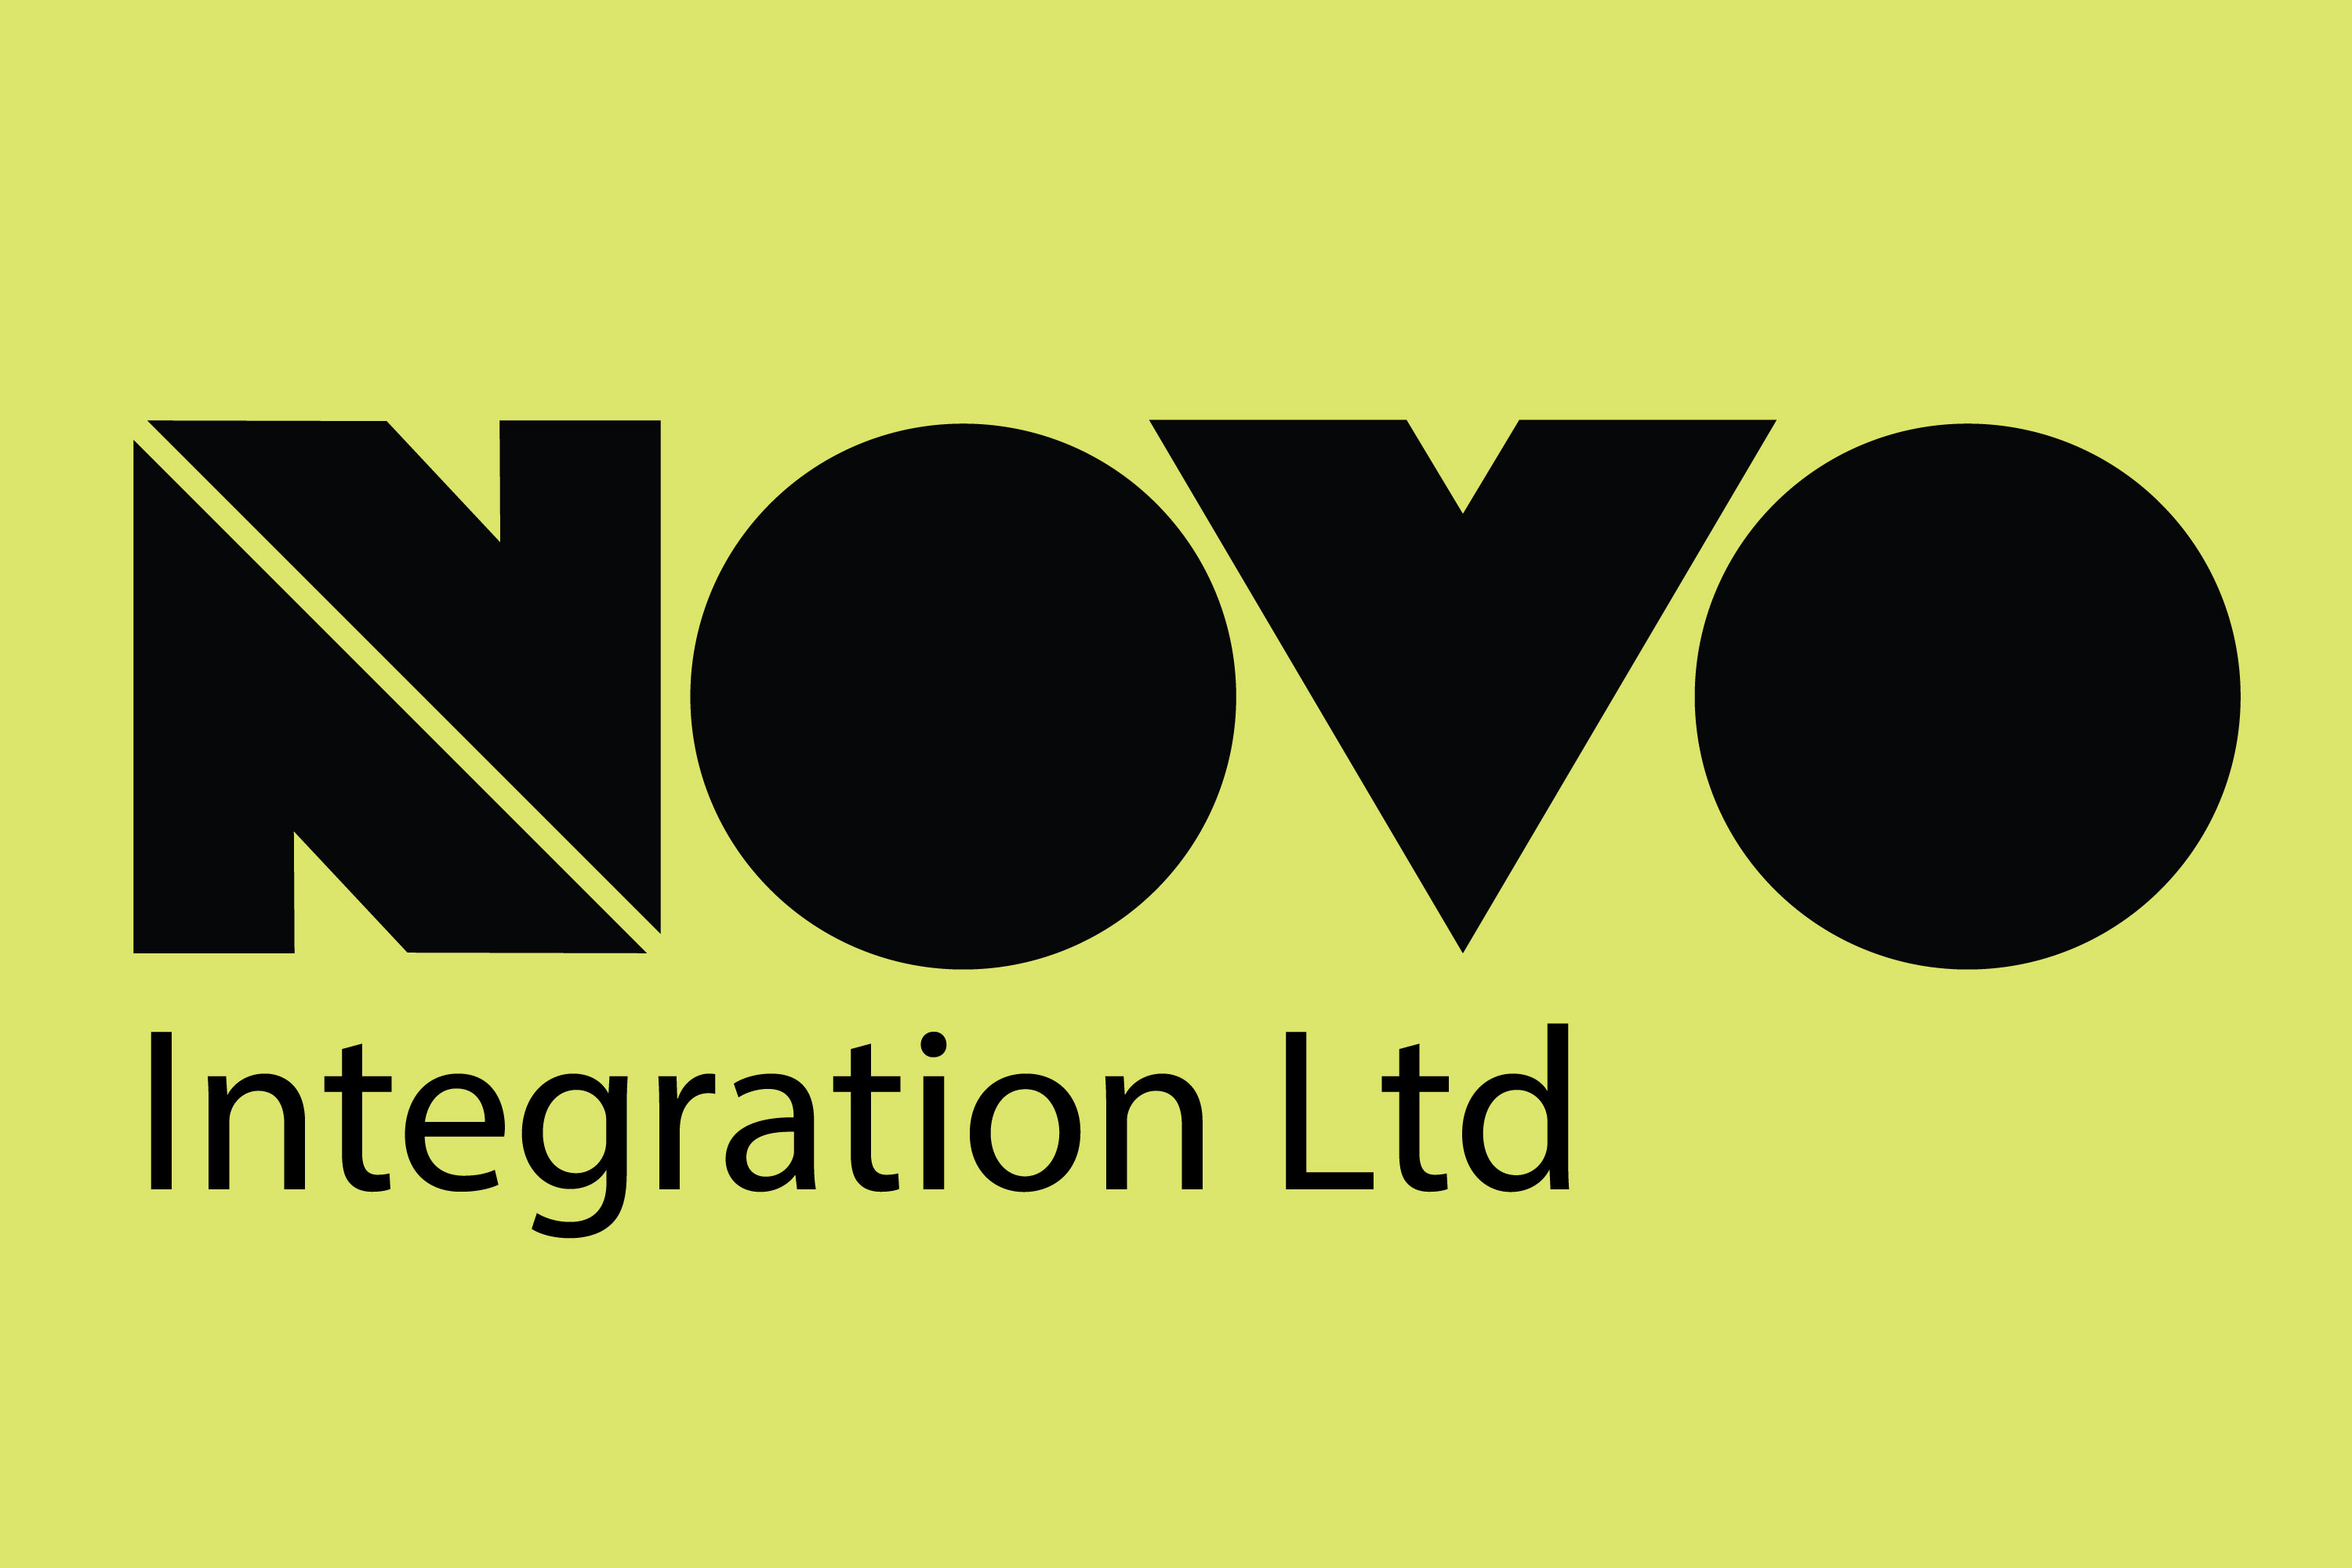 Novo Integration Ltd